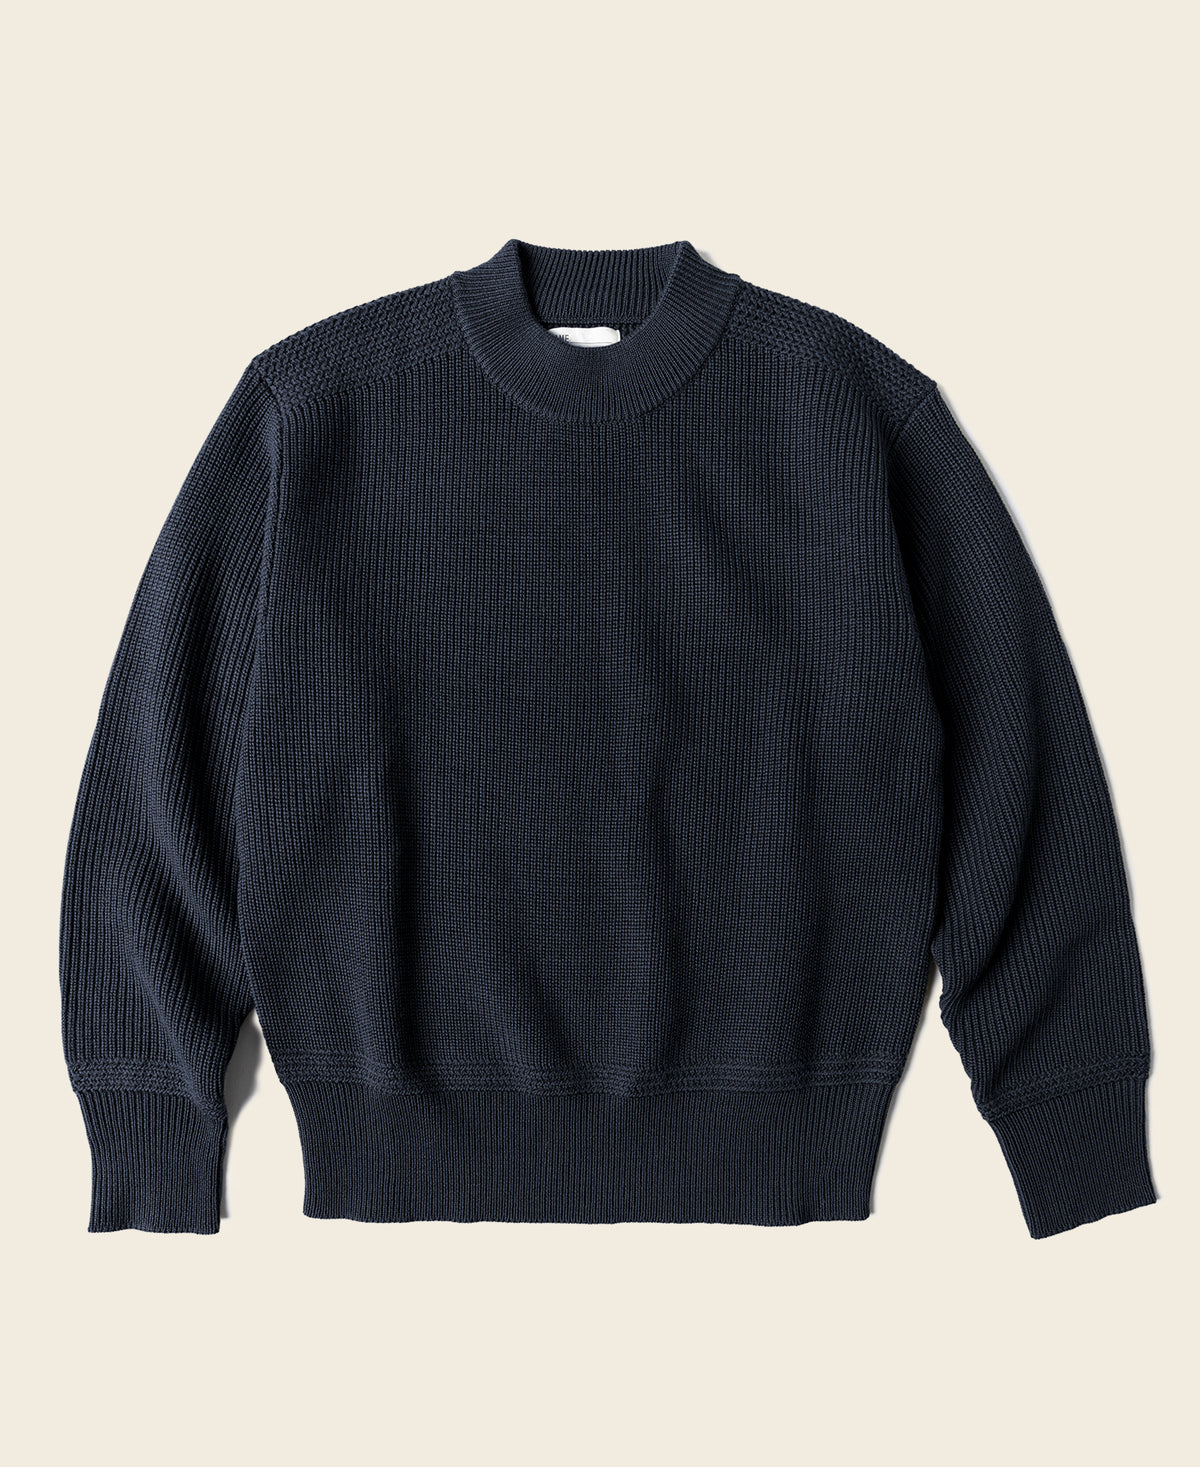 Pre-War Model USN Woolen Sweater - Navy